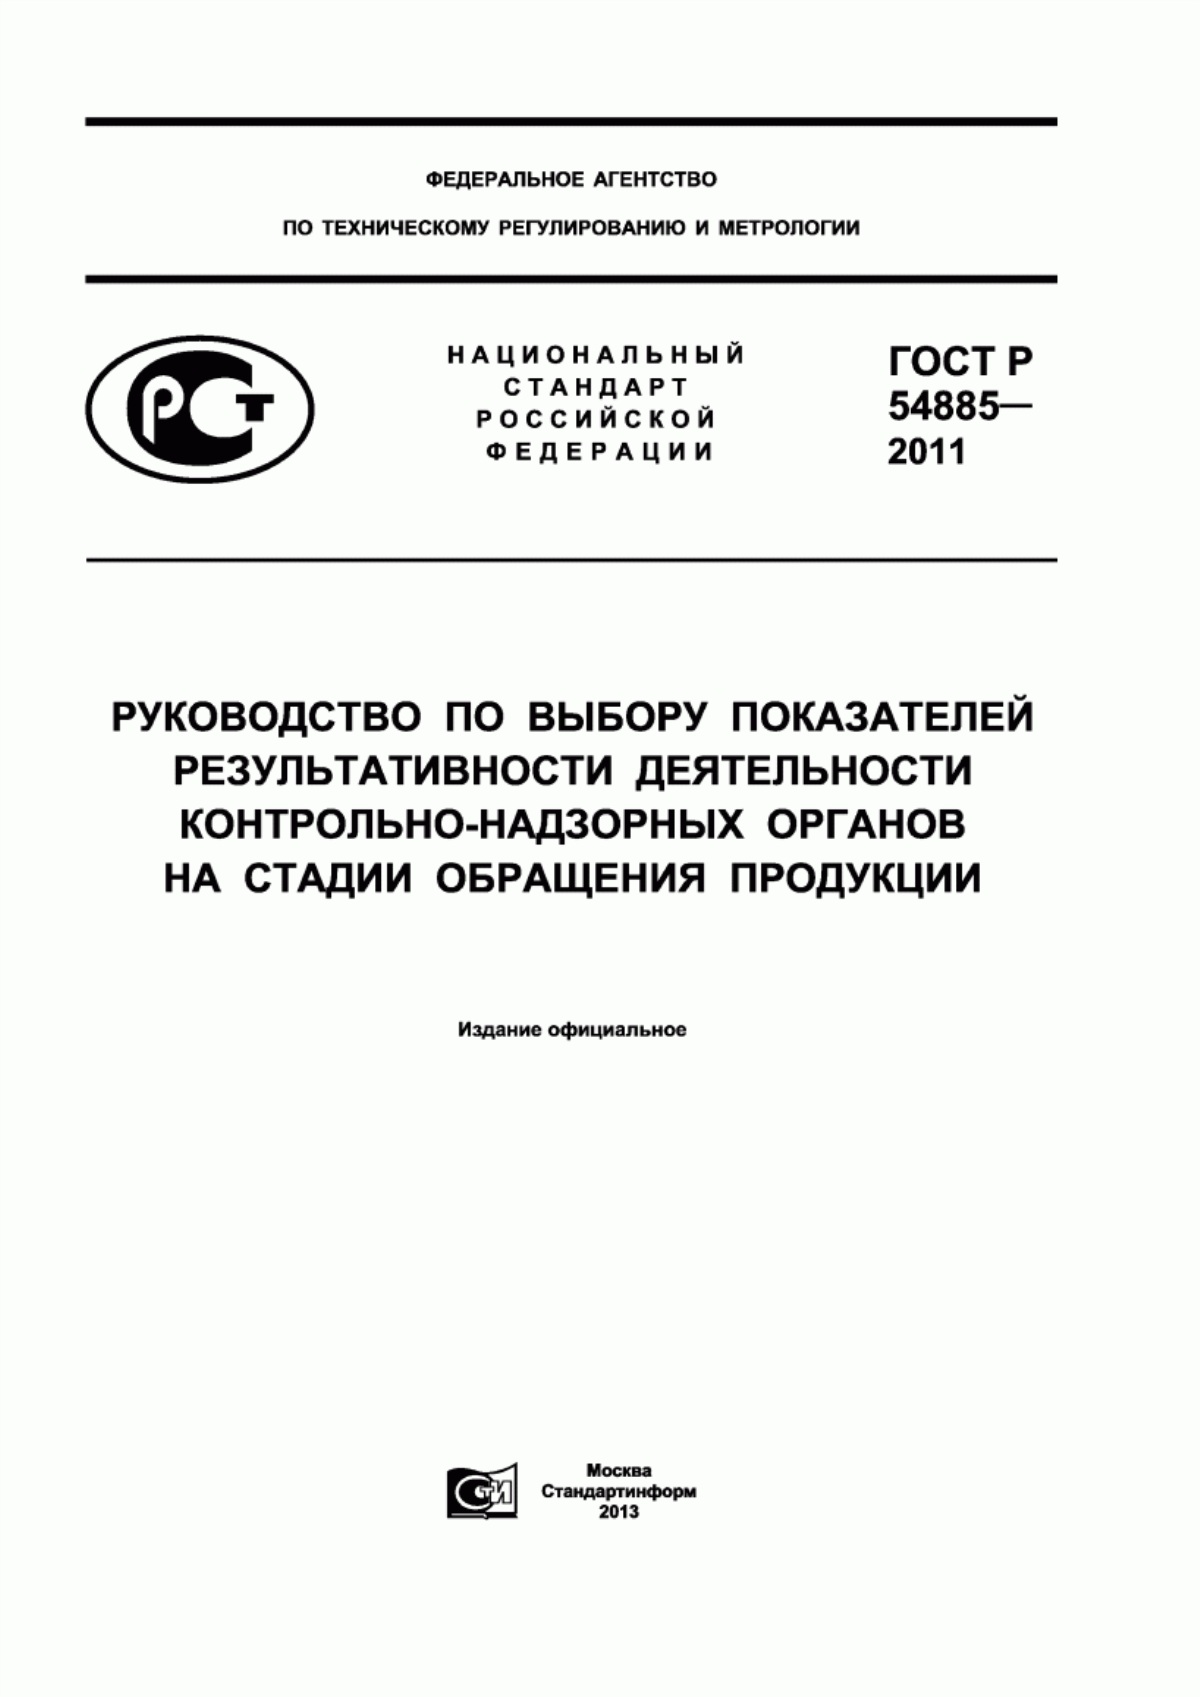 ГОСТ Р 54885-2011 Руководство по выбору показателей результативности деятельности контрольно-надзорных органов на стадии обращения продукции